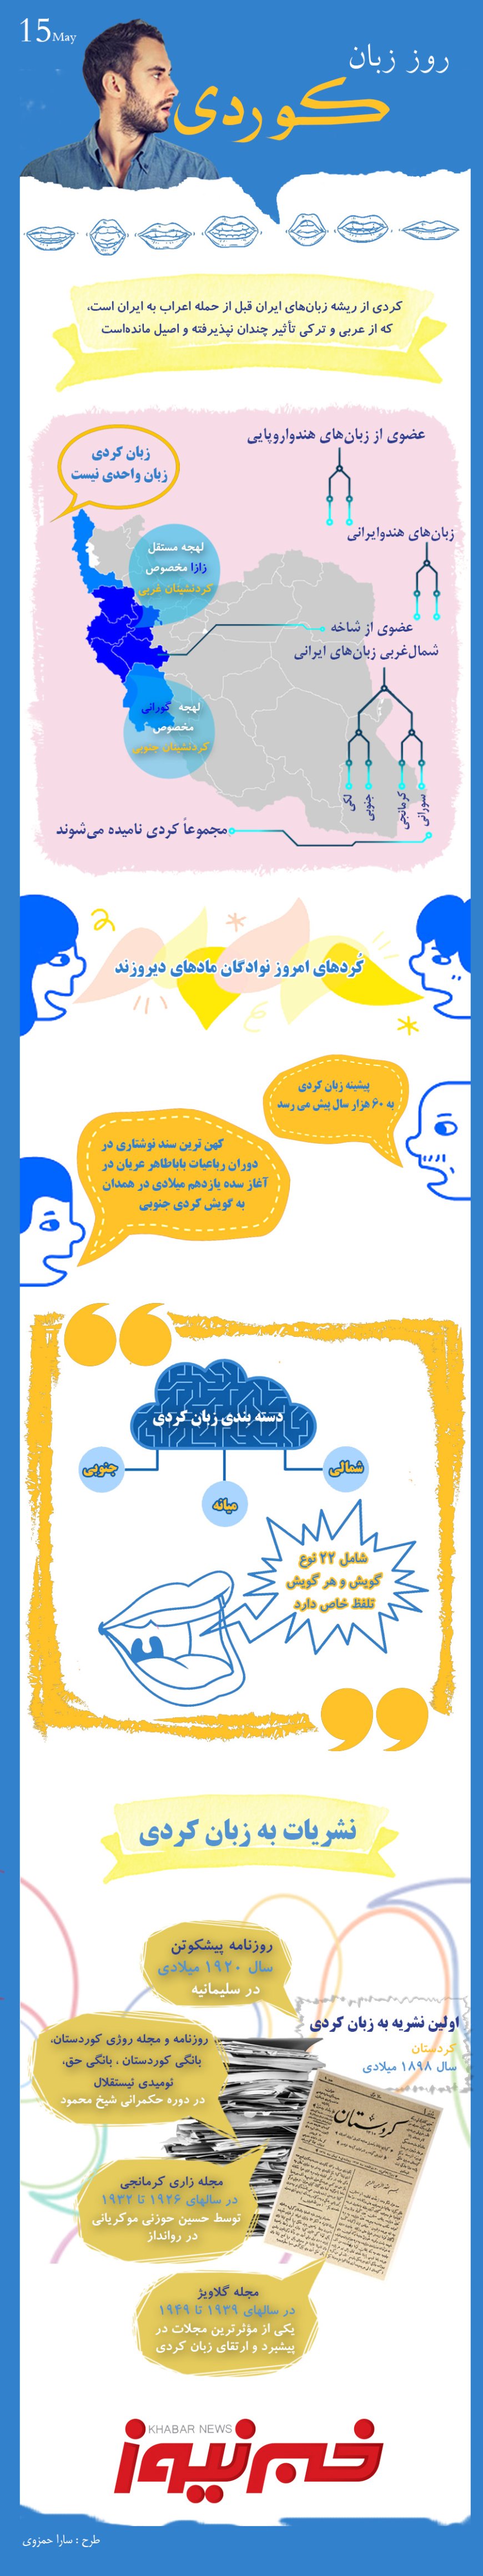 اینفوگرافیک | روز زبان کردی